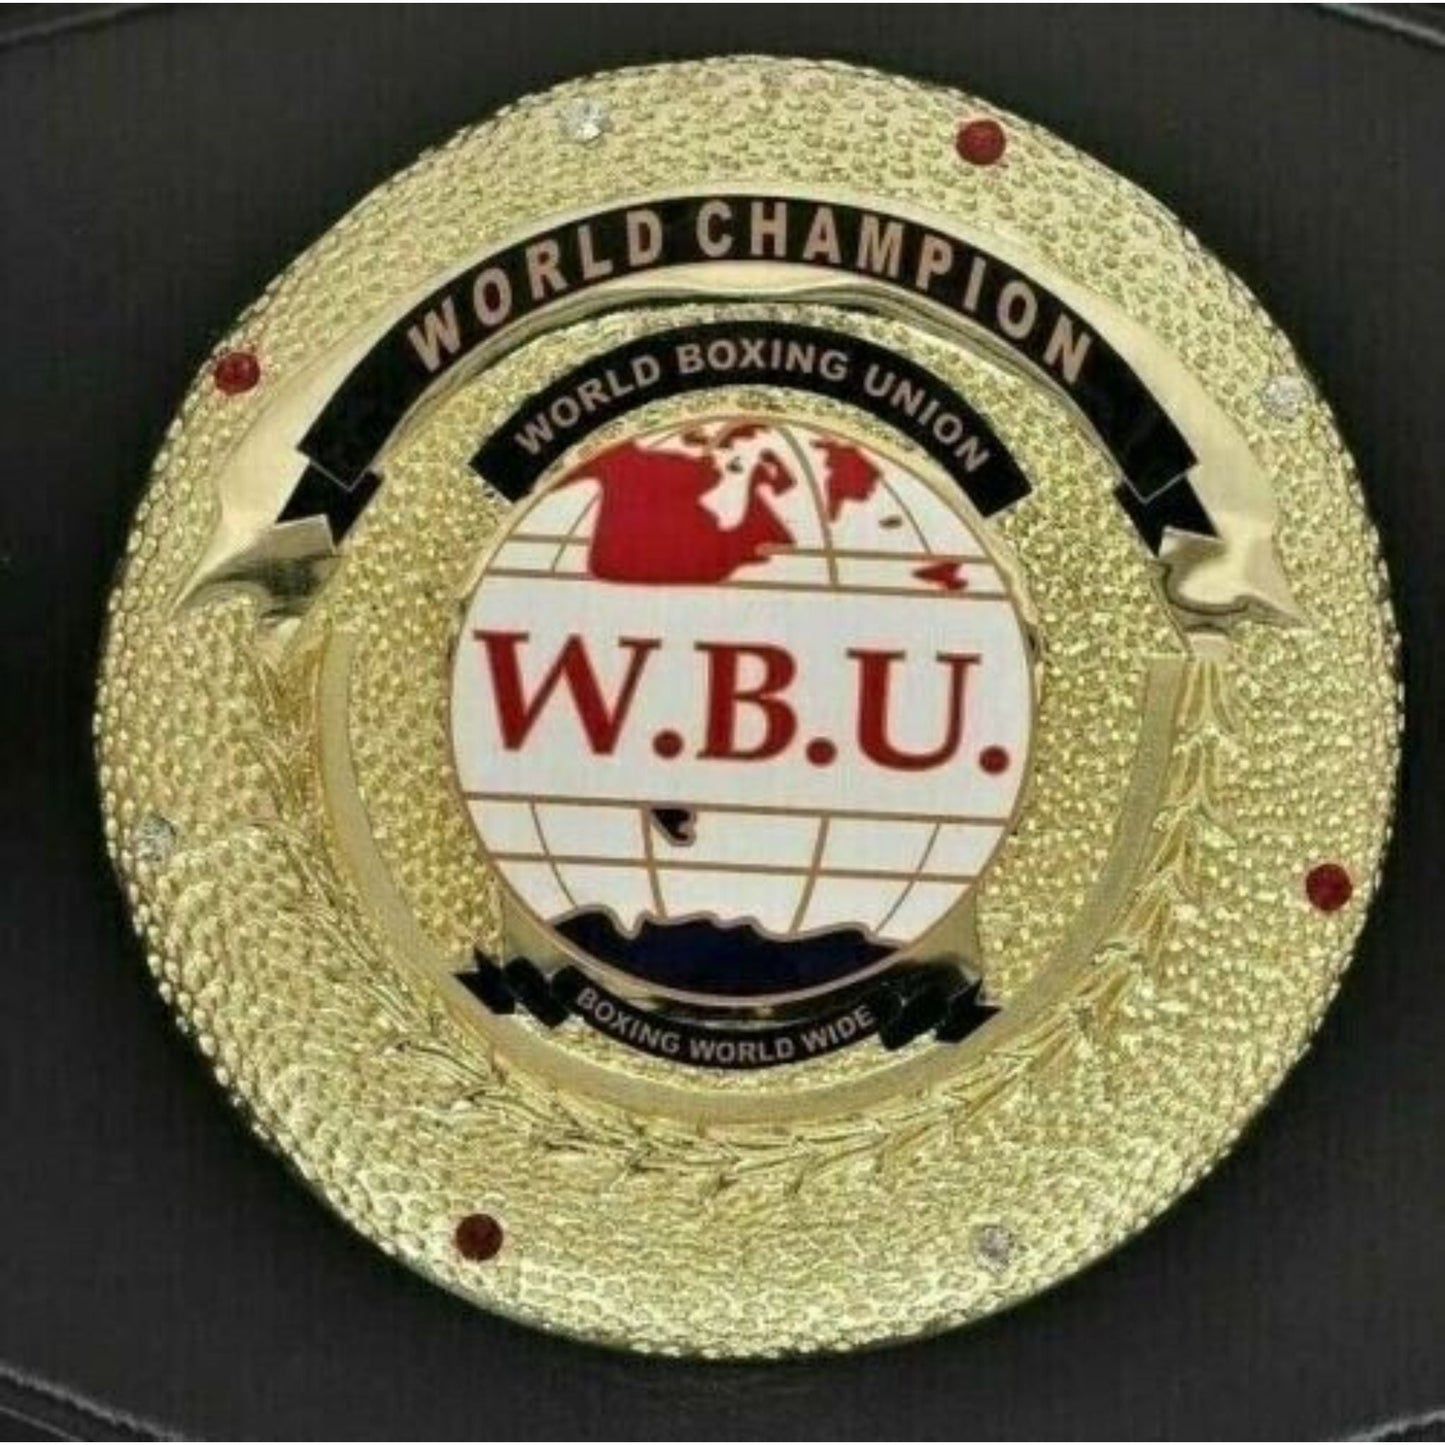 WBU (World Boxing Union) Boxing Championship Replica Belt Adult size